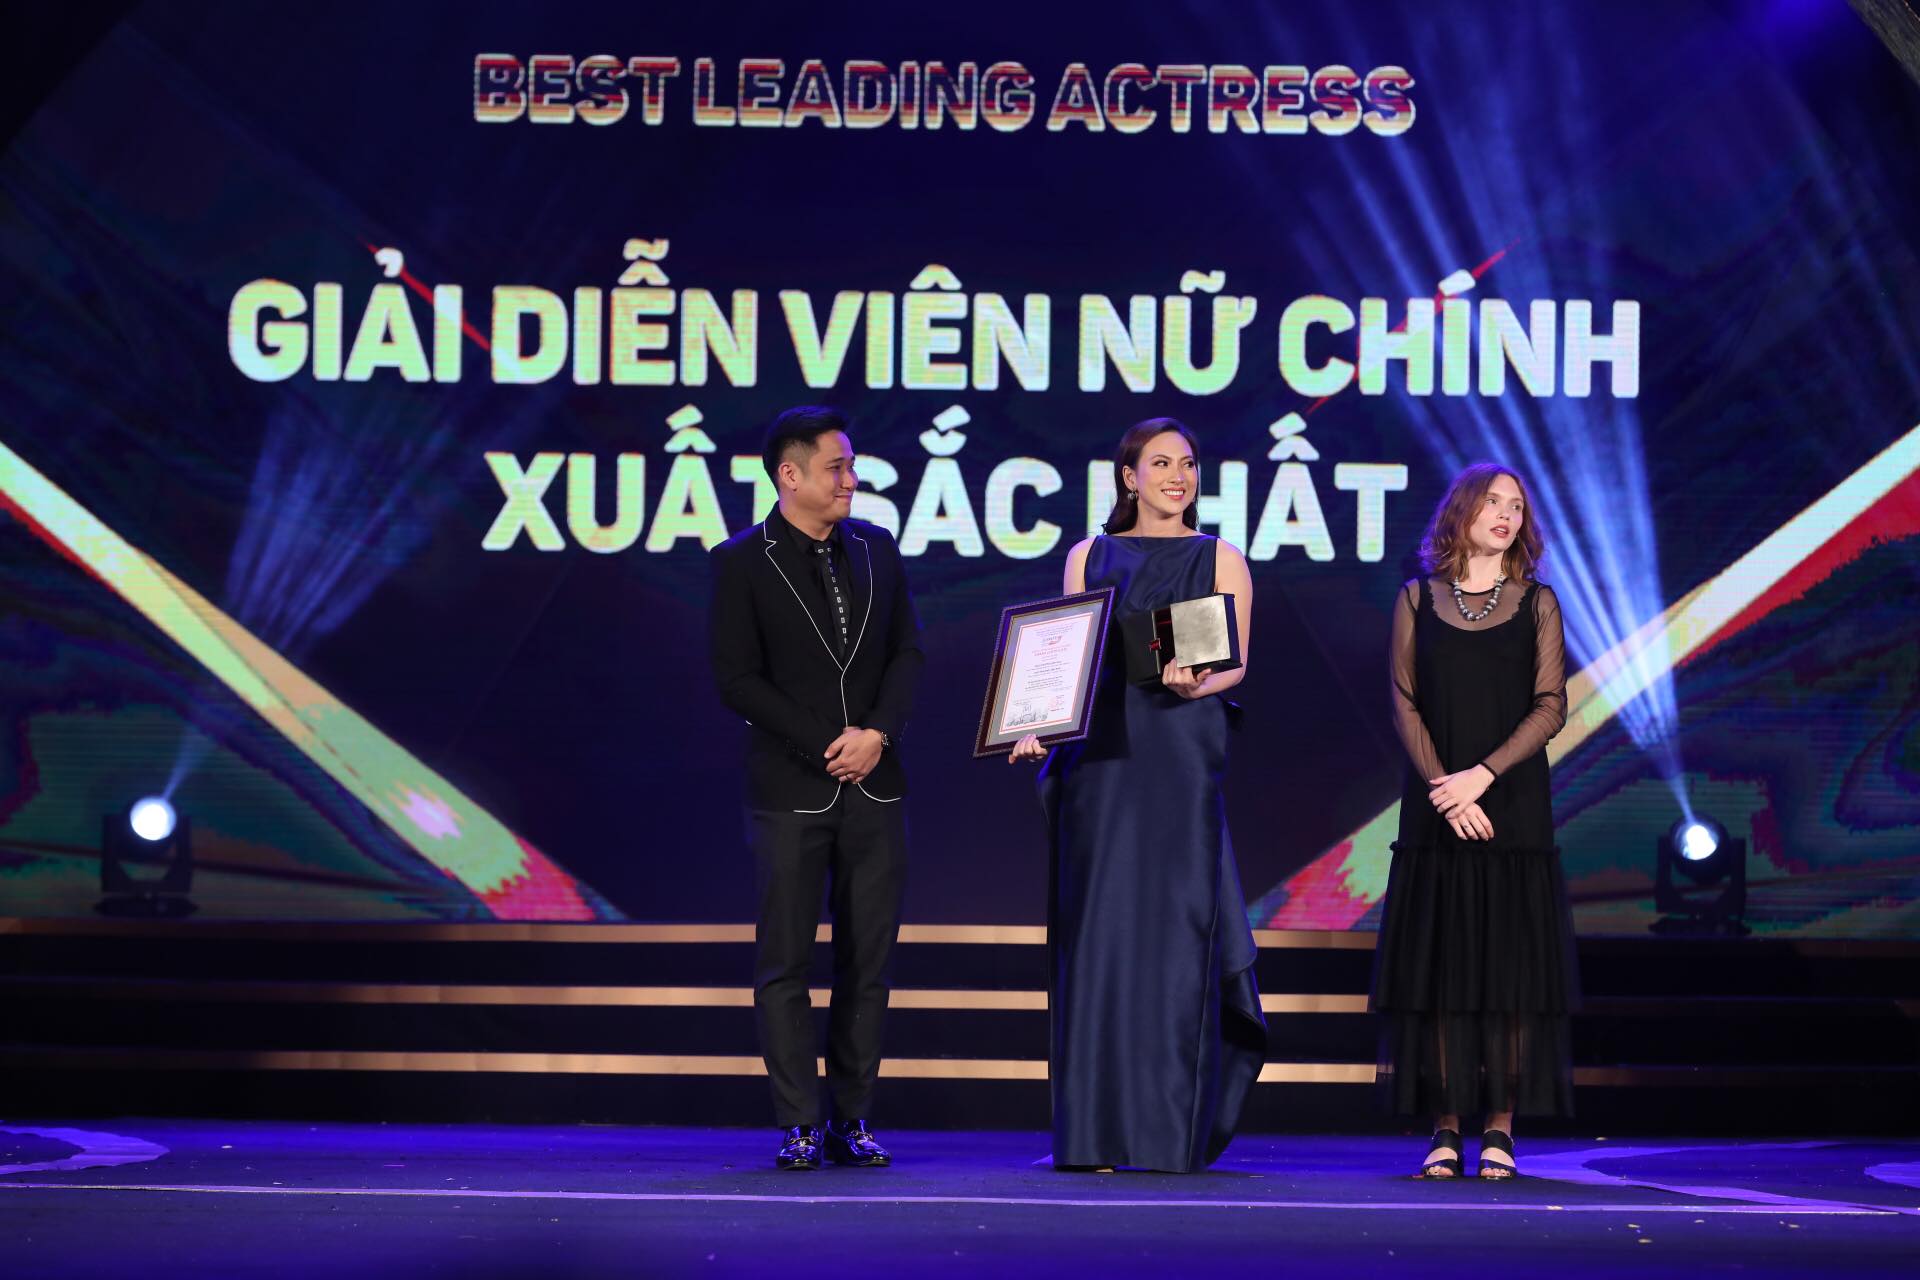 Diễn viên Đào Phương Anh Đào giành Giải Diễn viên nữ chính xuất sắc nhất.